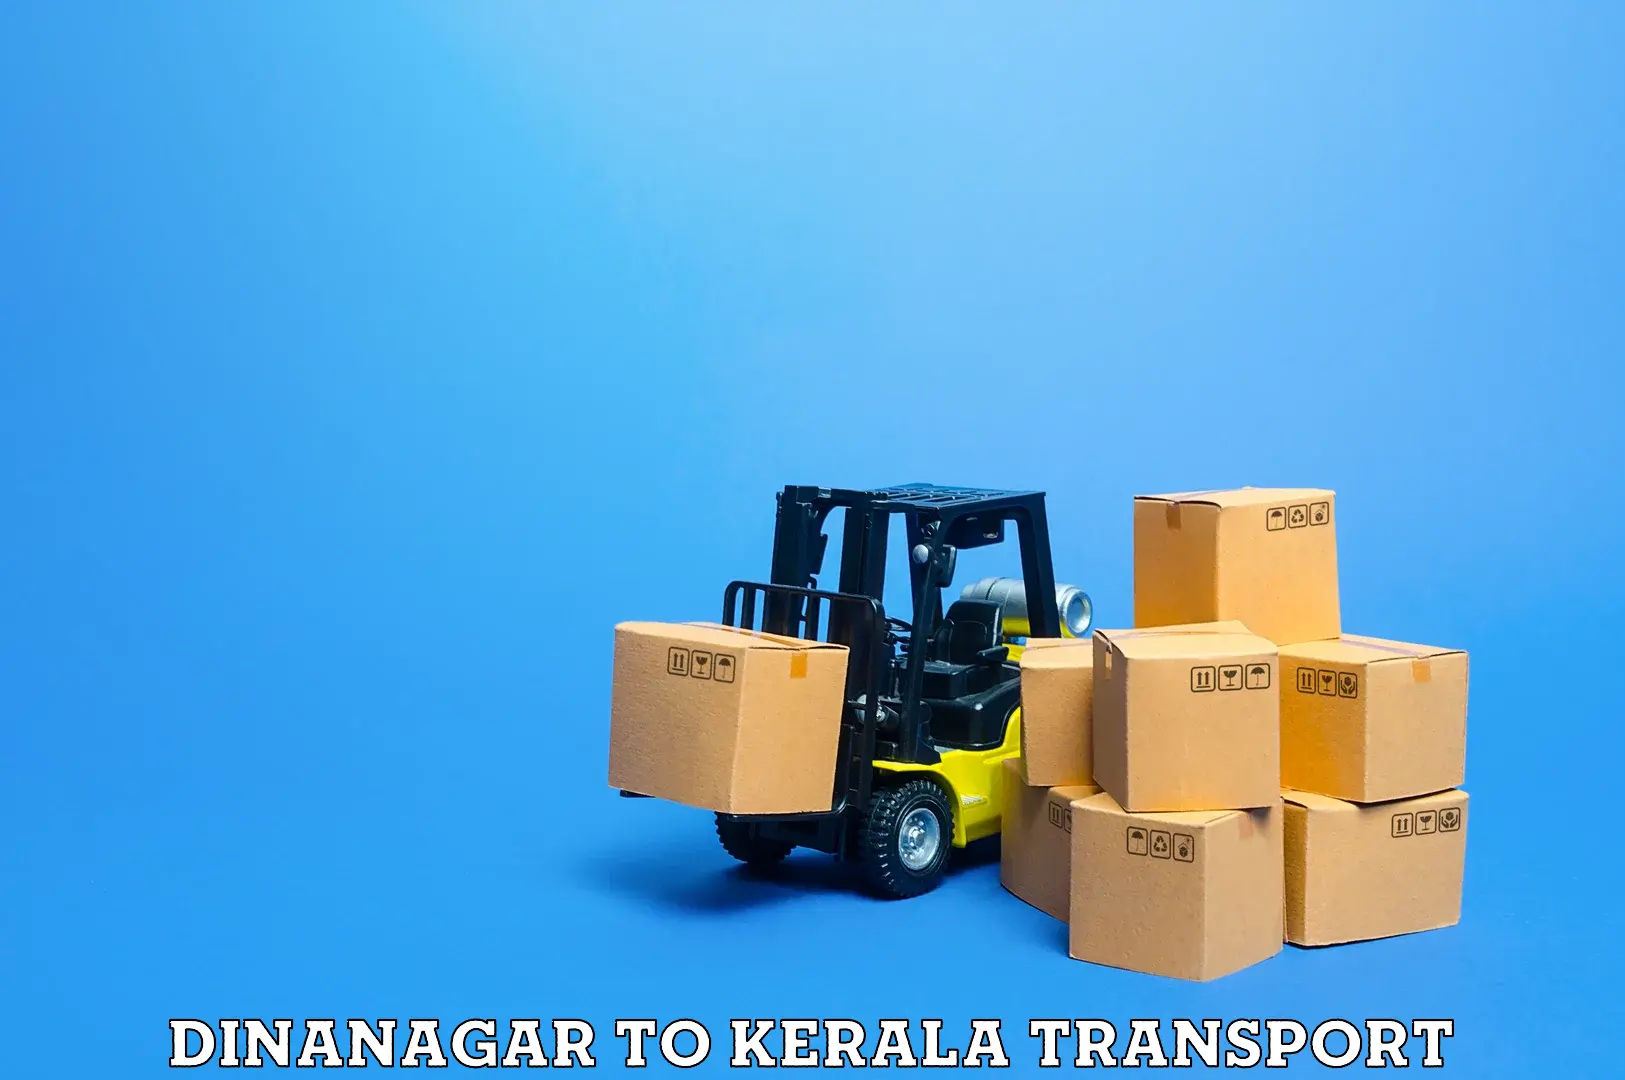 Commercial transport service Dinanagar to Kottayam